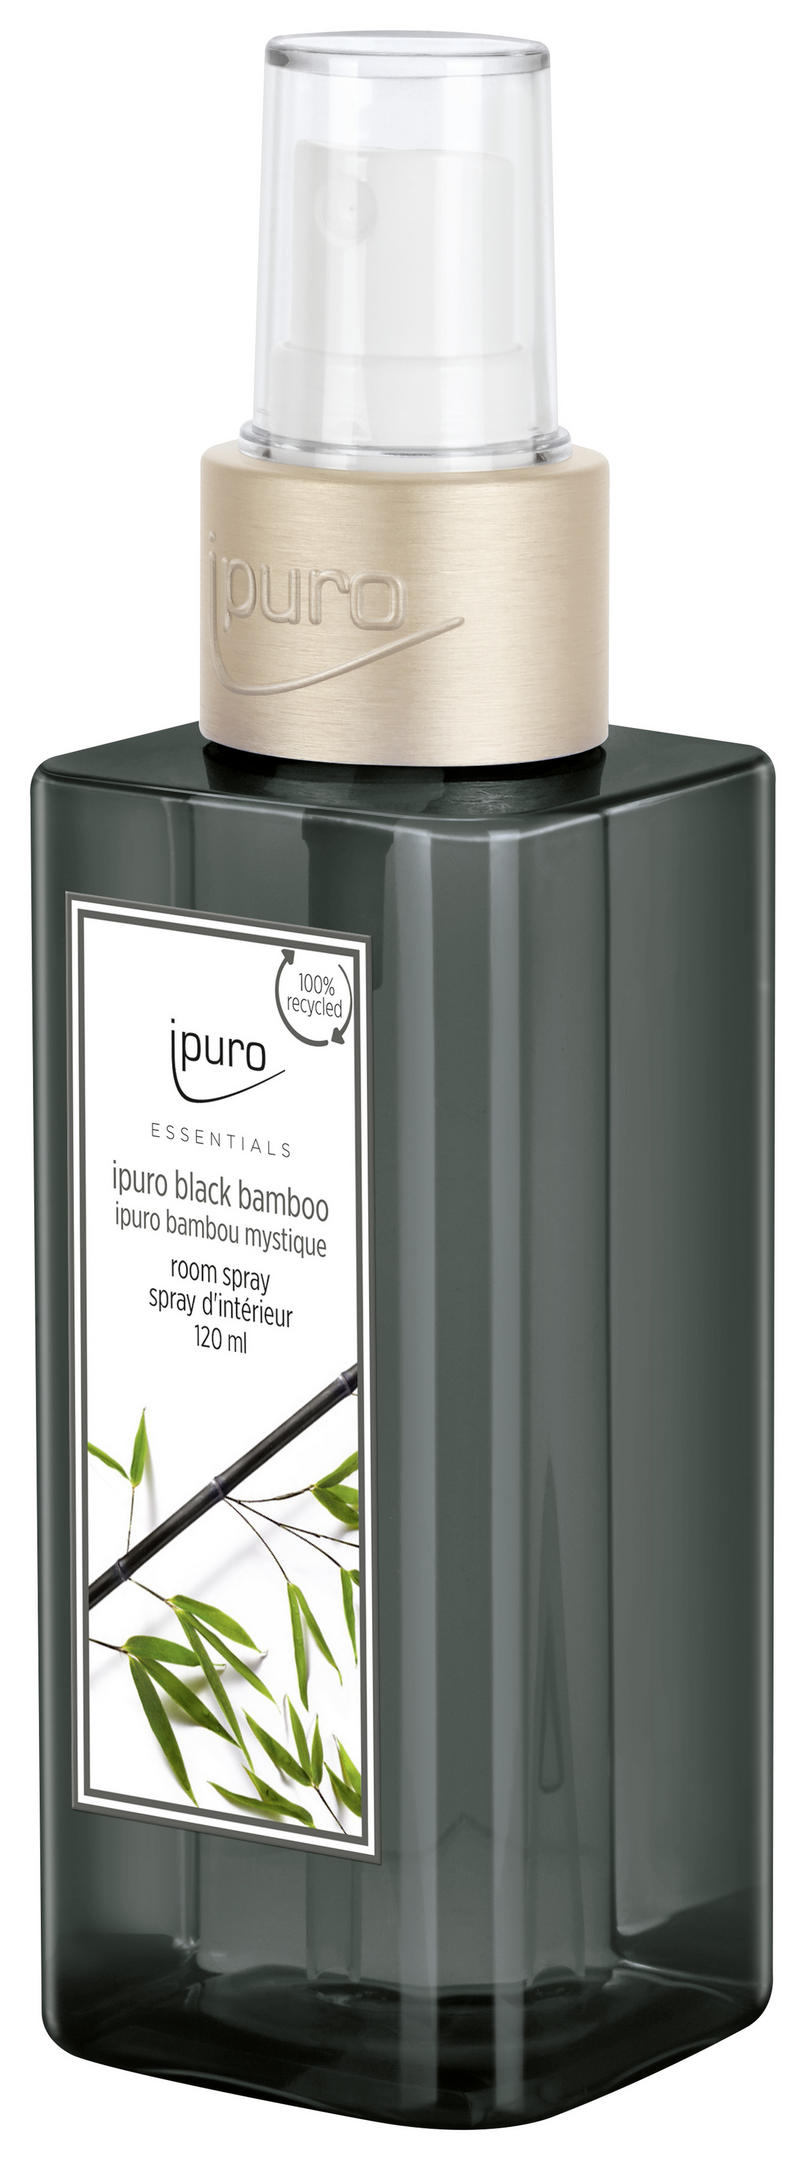 Ipuro RAUMSPRAY Essentials Black Bamboo jetzt nur online ➤